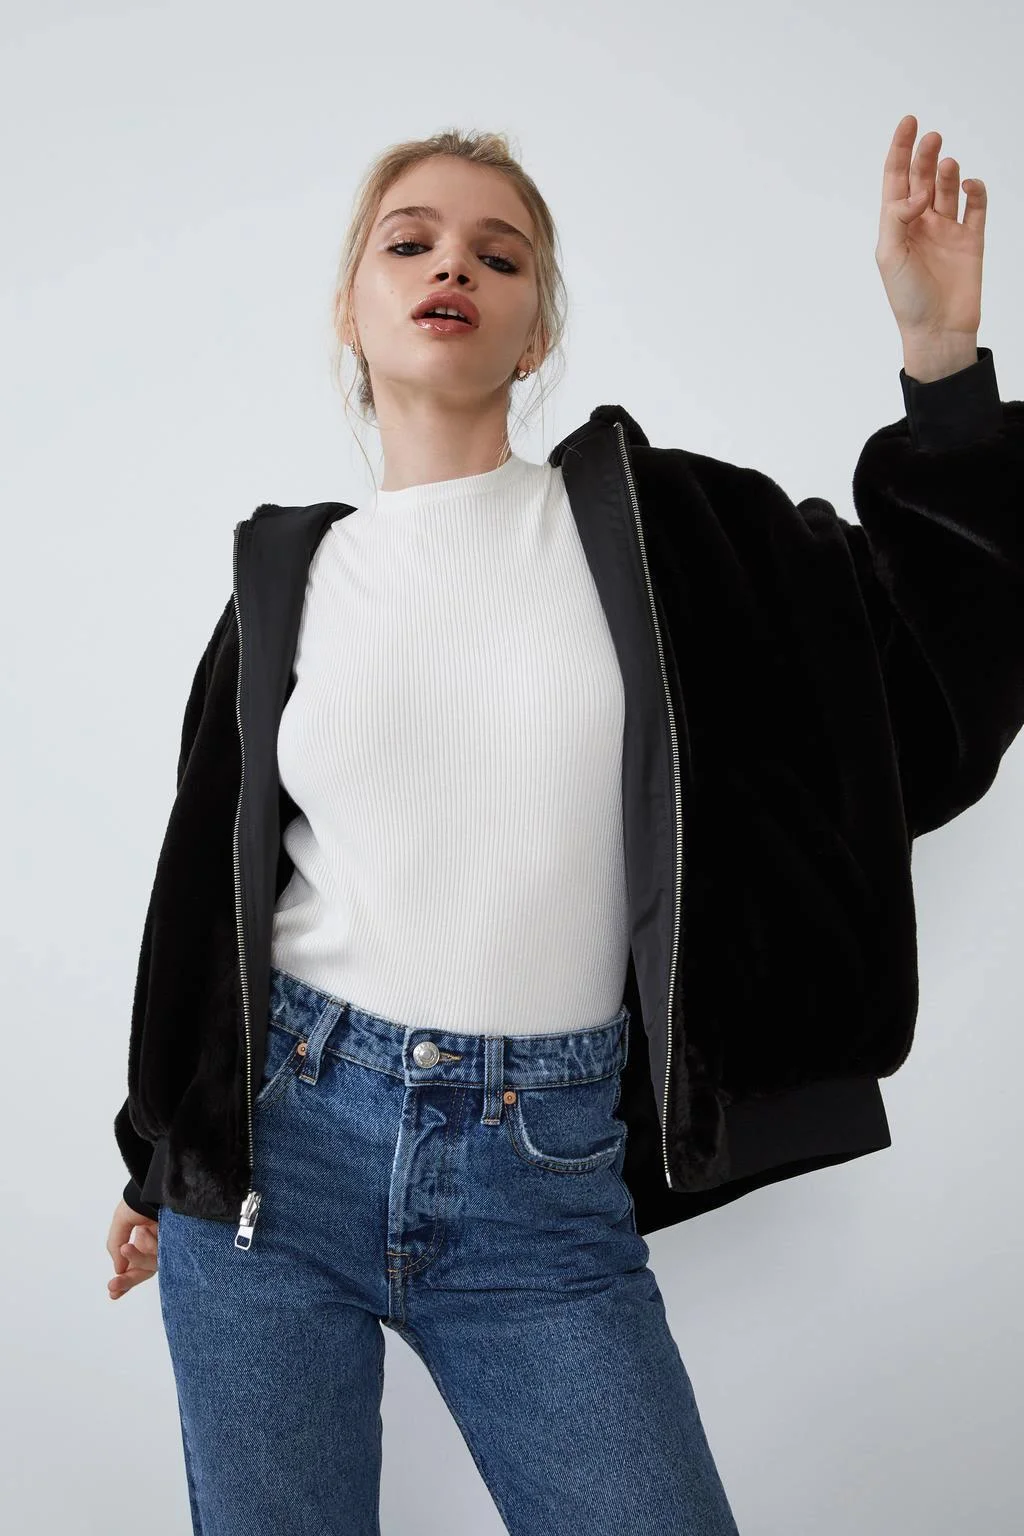 2022 Ladies Reversible Hooded Jacket Faux Fur Fleece Warm Winter Womens Tops Bomber Jackets New Coats Black Outwear Long Sleeve